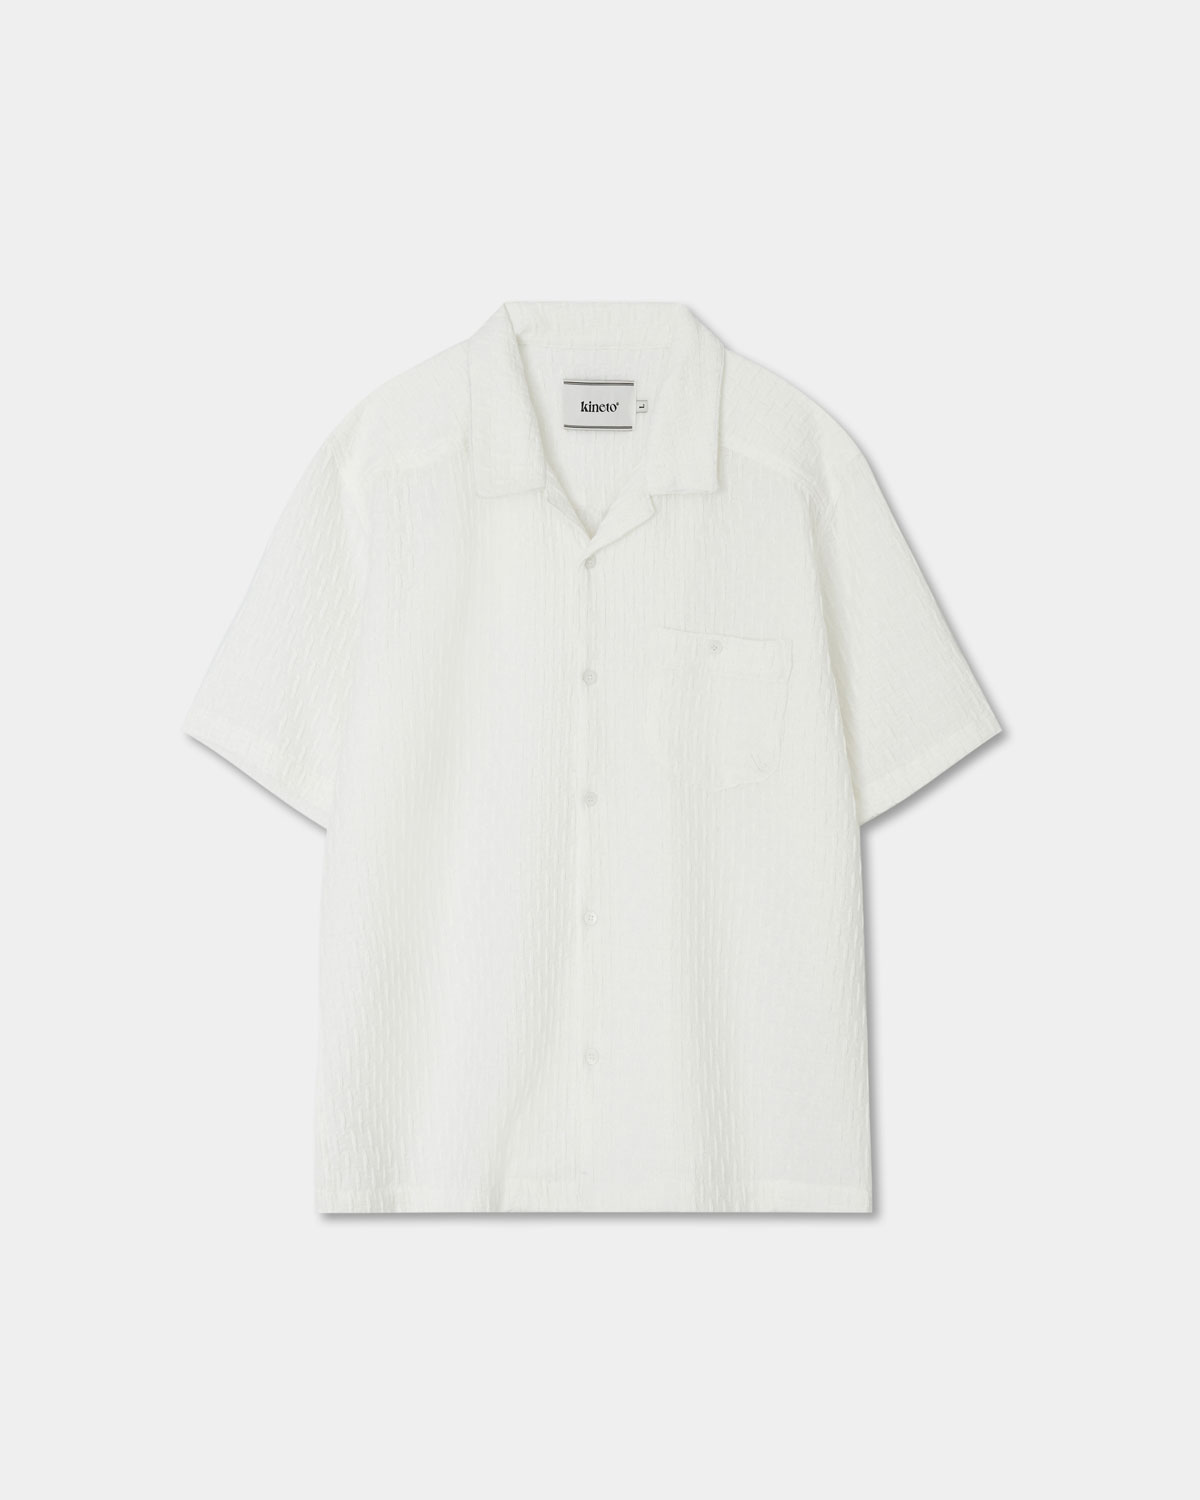 Wrinkle Emboss Open Collar Shirt_White_예약 배송 05/10